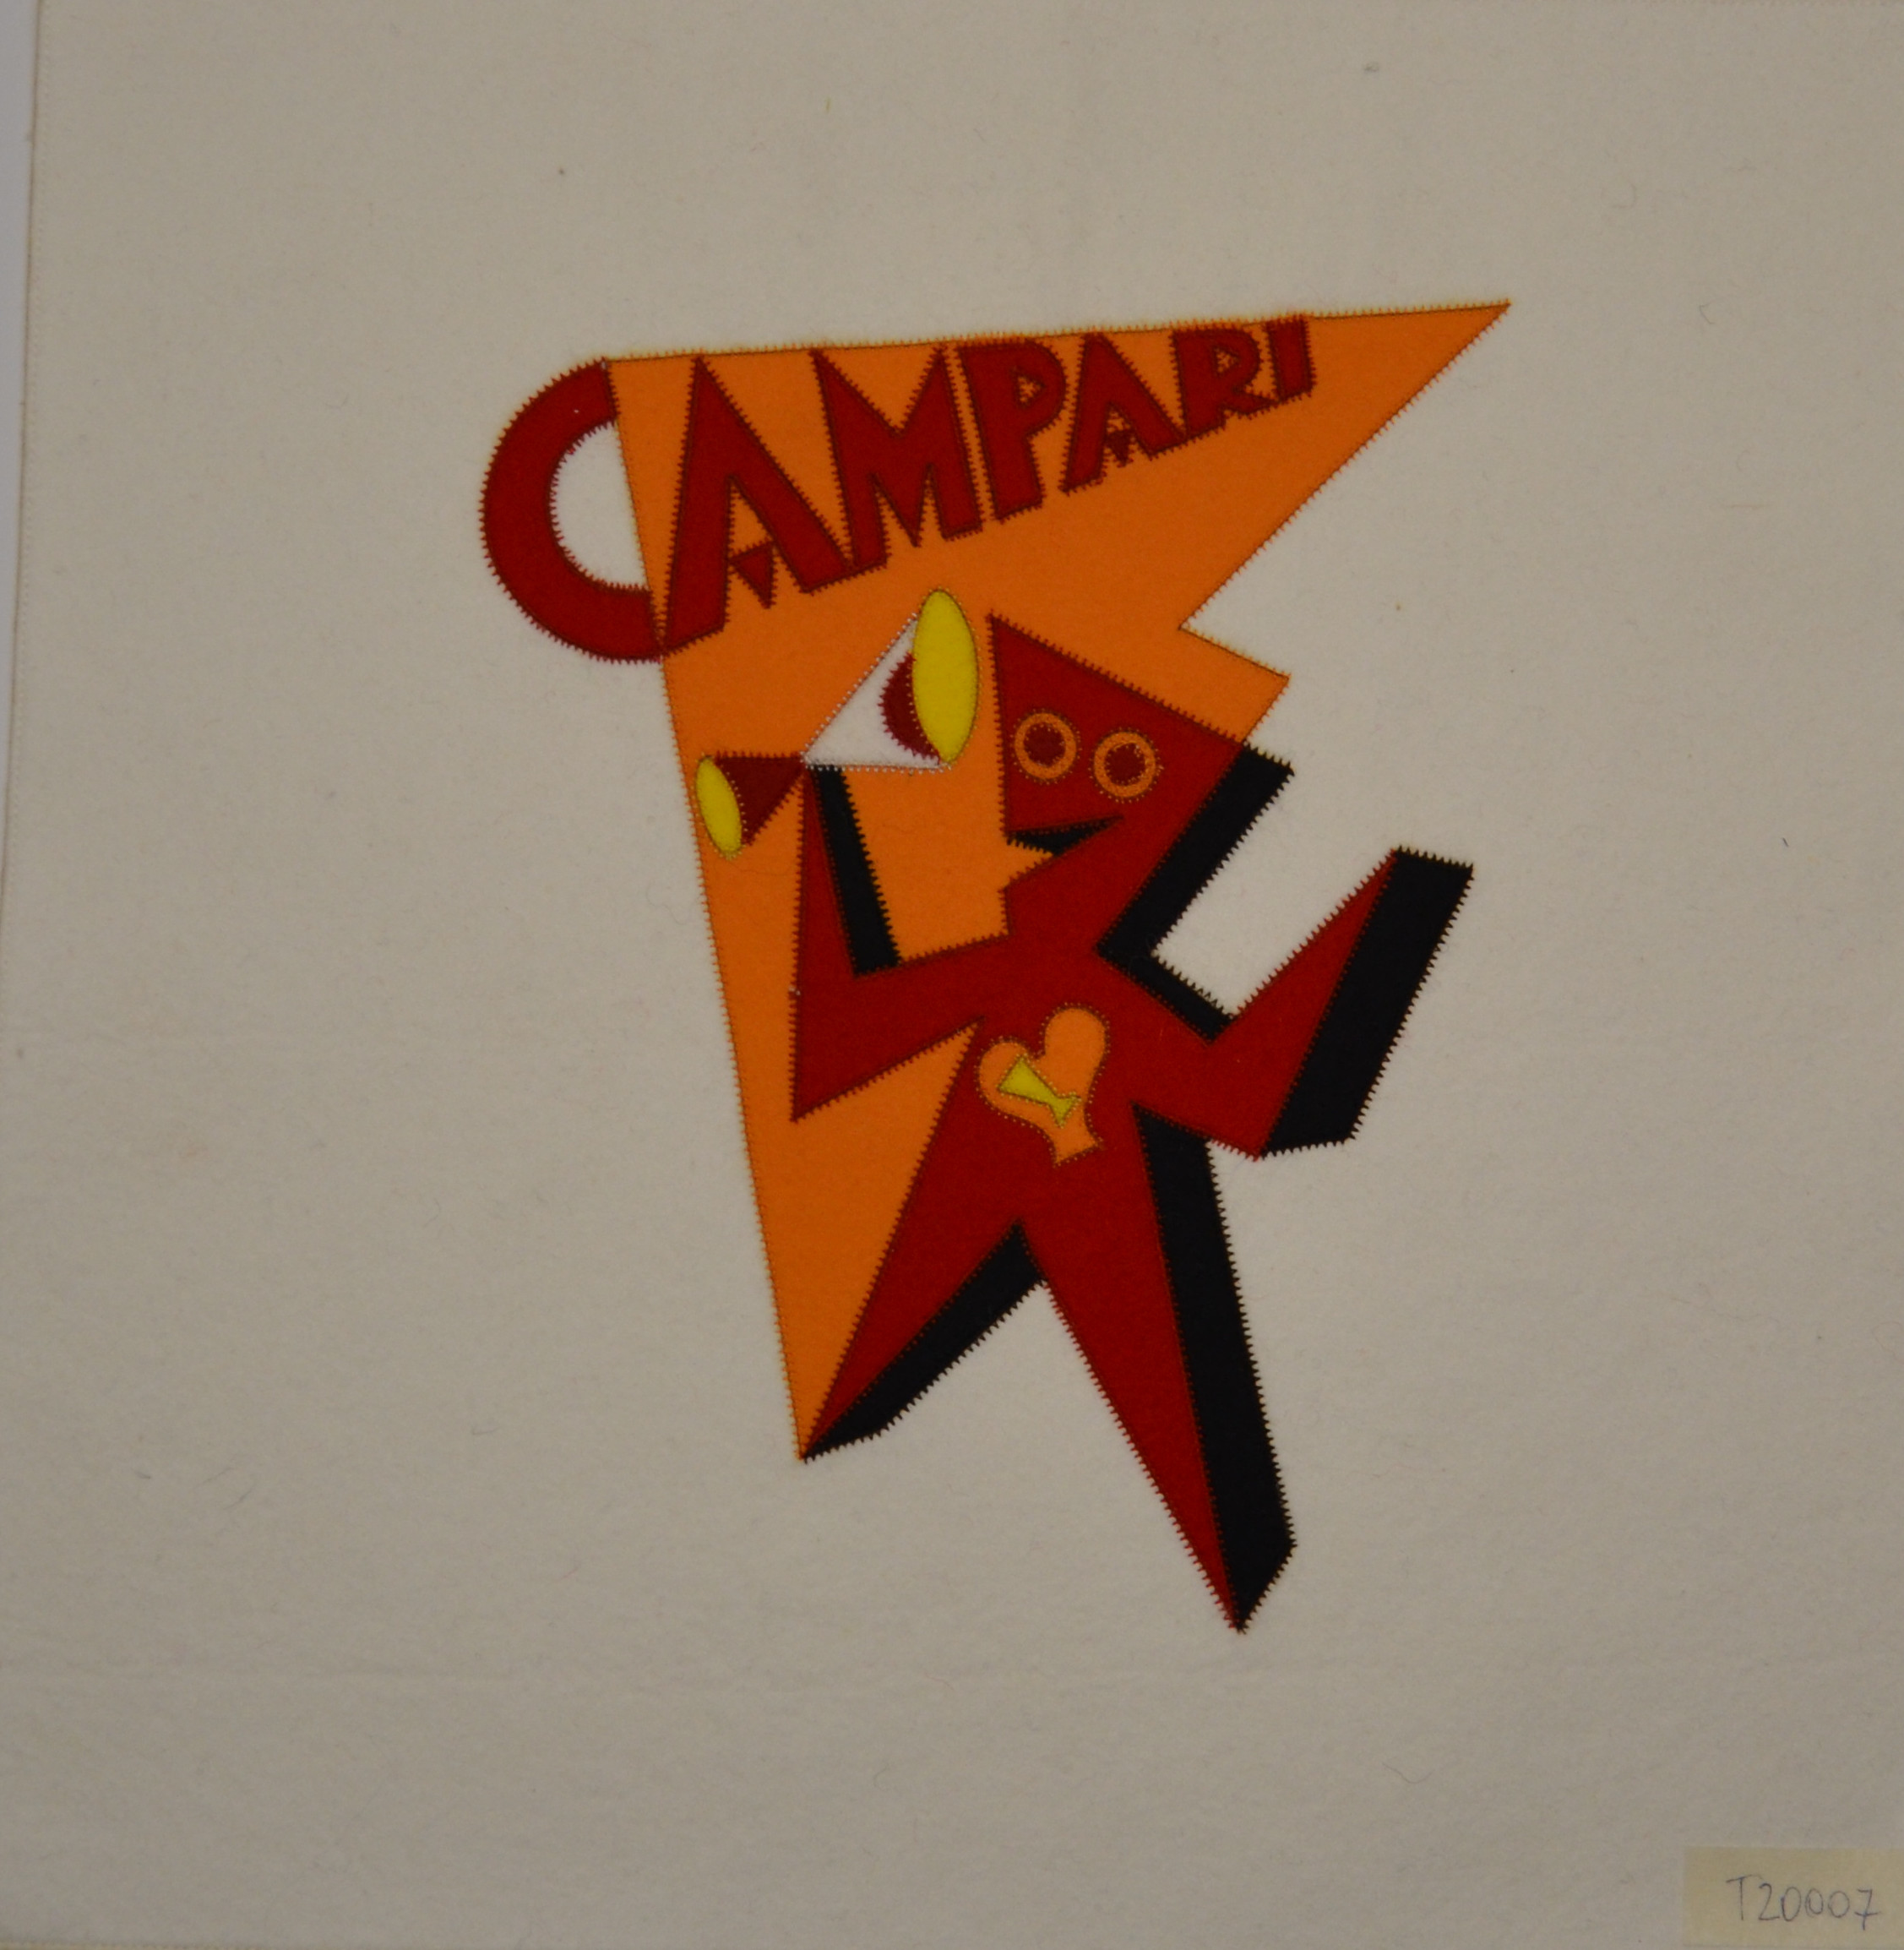 Omino Campari T20007